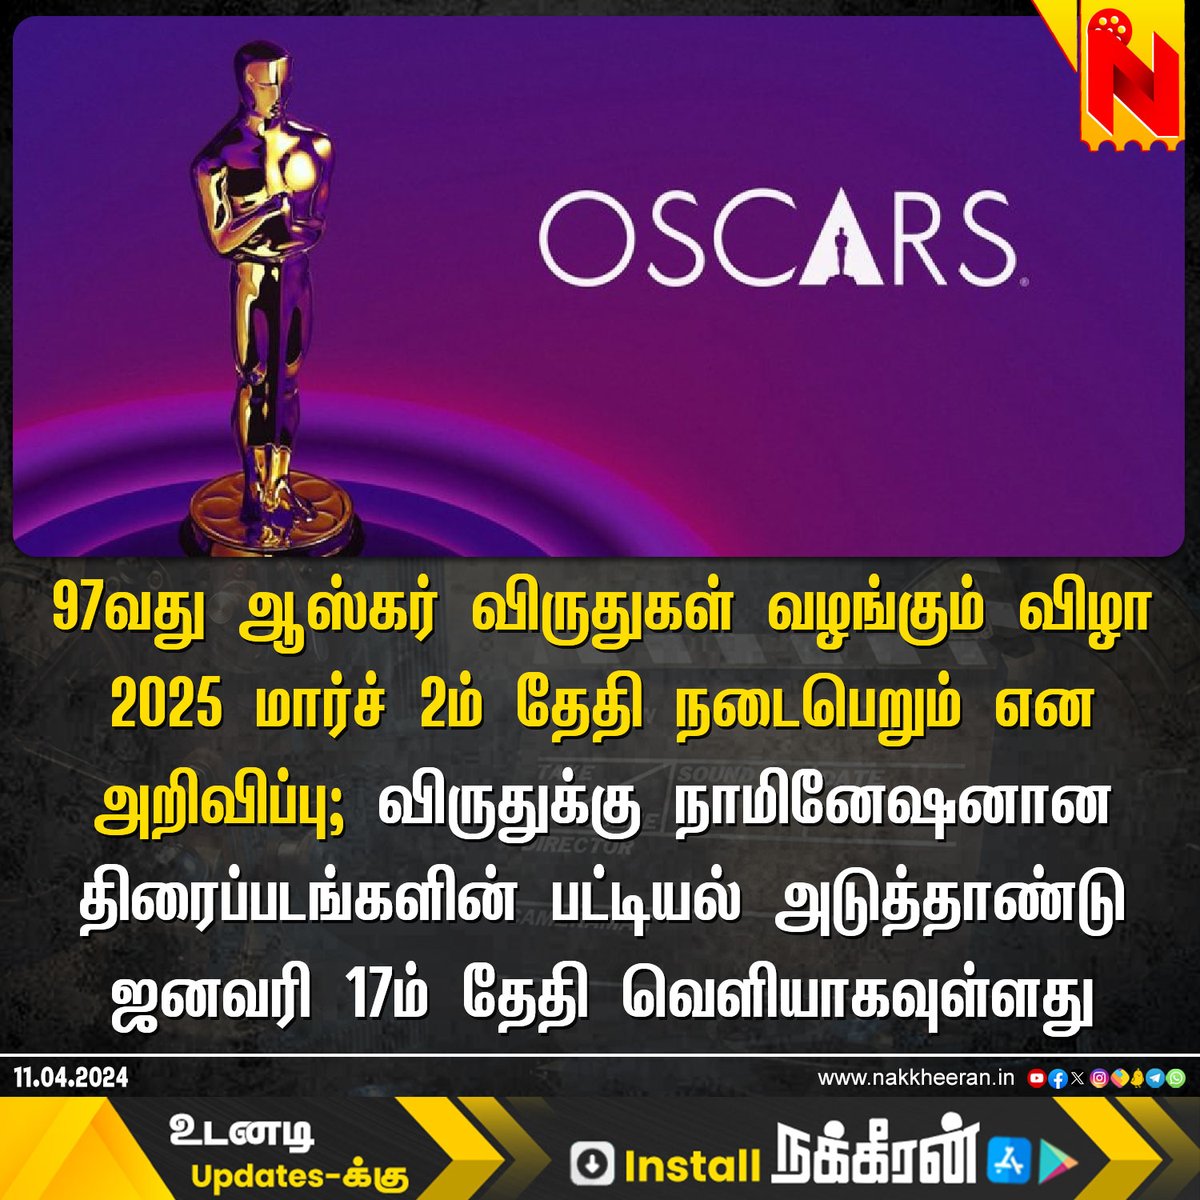 97வது ஆஸ்கர் விருதுகள் வழங்கும் விழா தேதி அறிவிப்பு #Oscars2025 #AcademyAwards #NakkheeranStudio